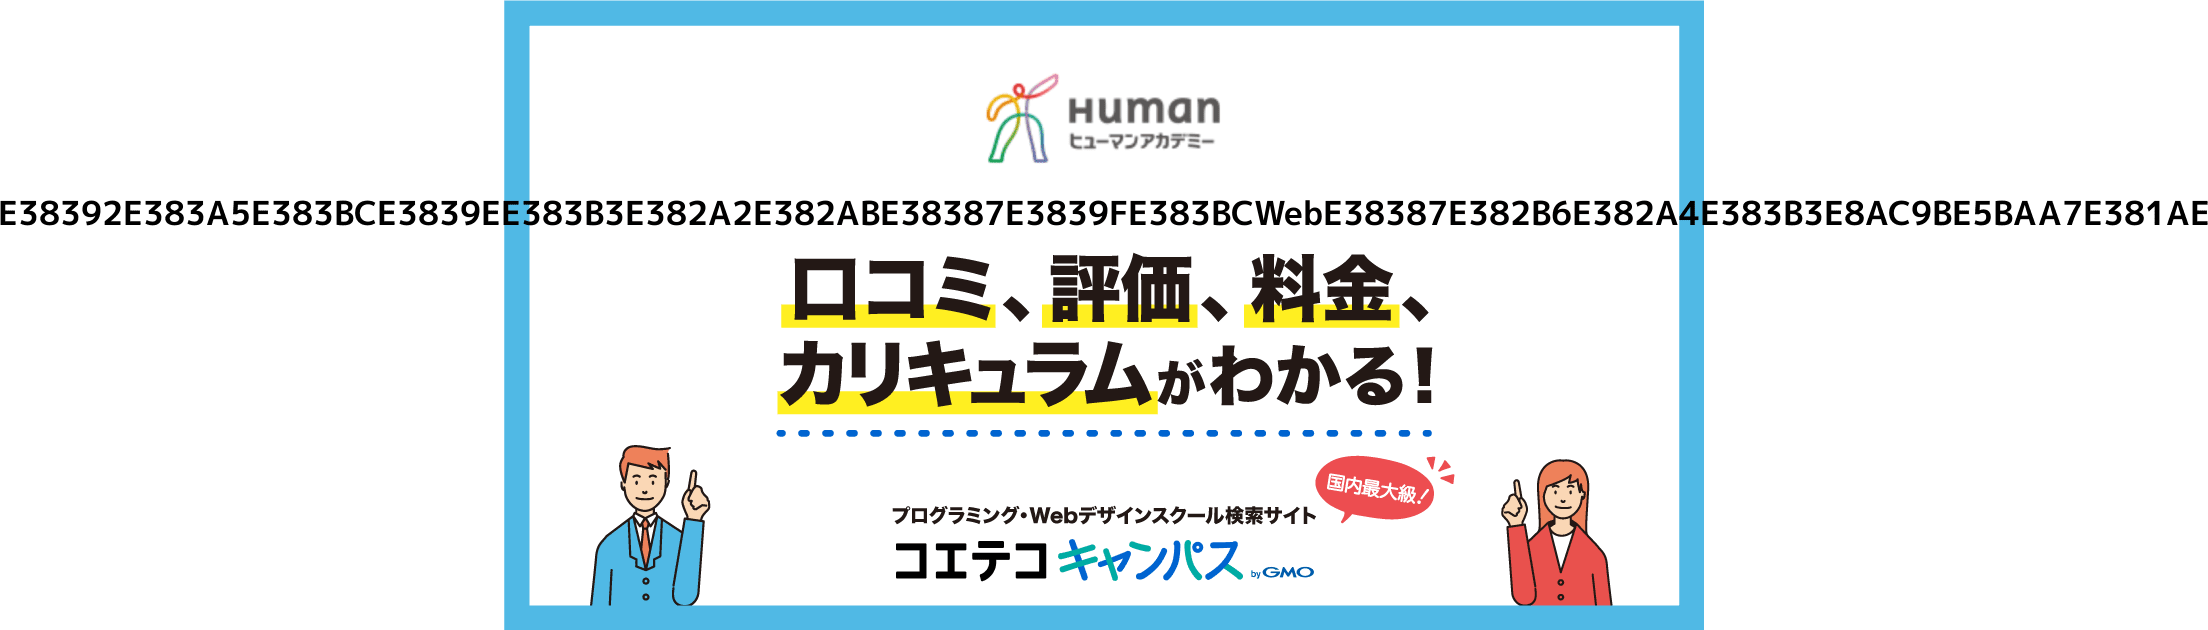 ヒューマンアカデミーwebデザイン教材 - コンピュータ・IT